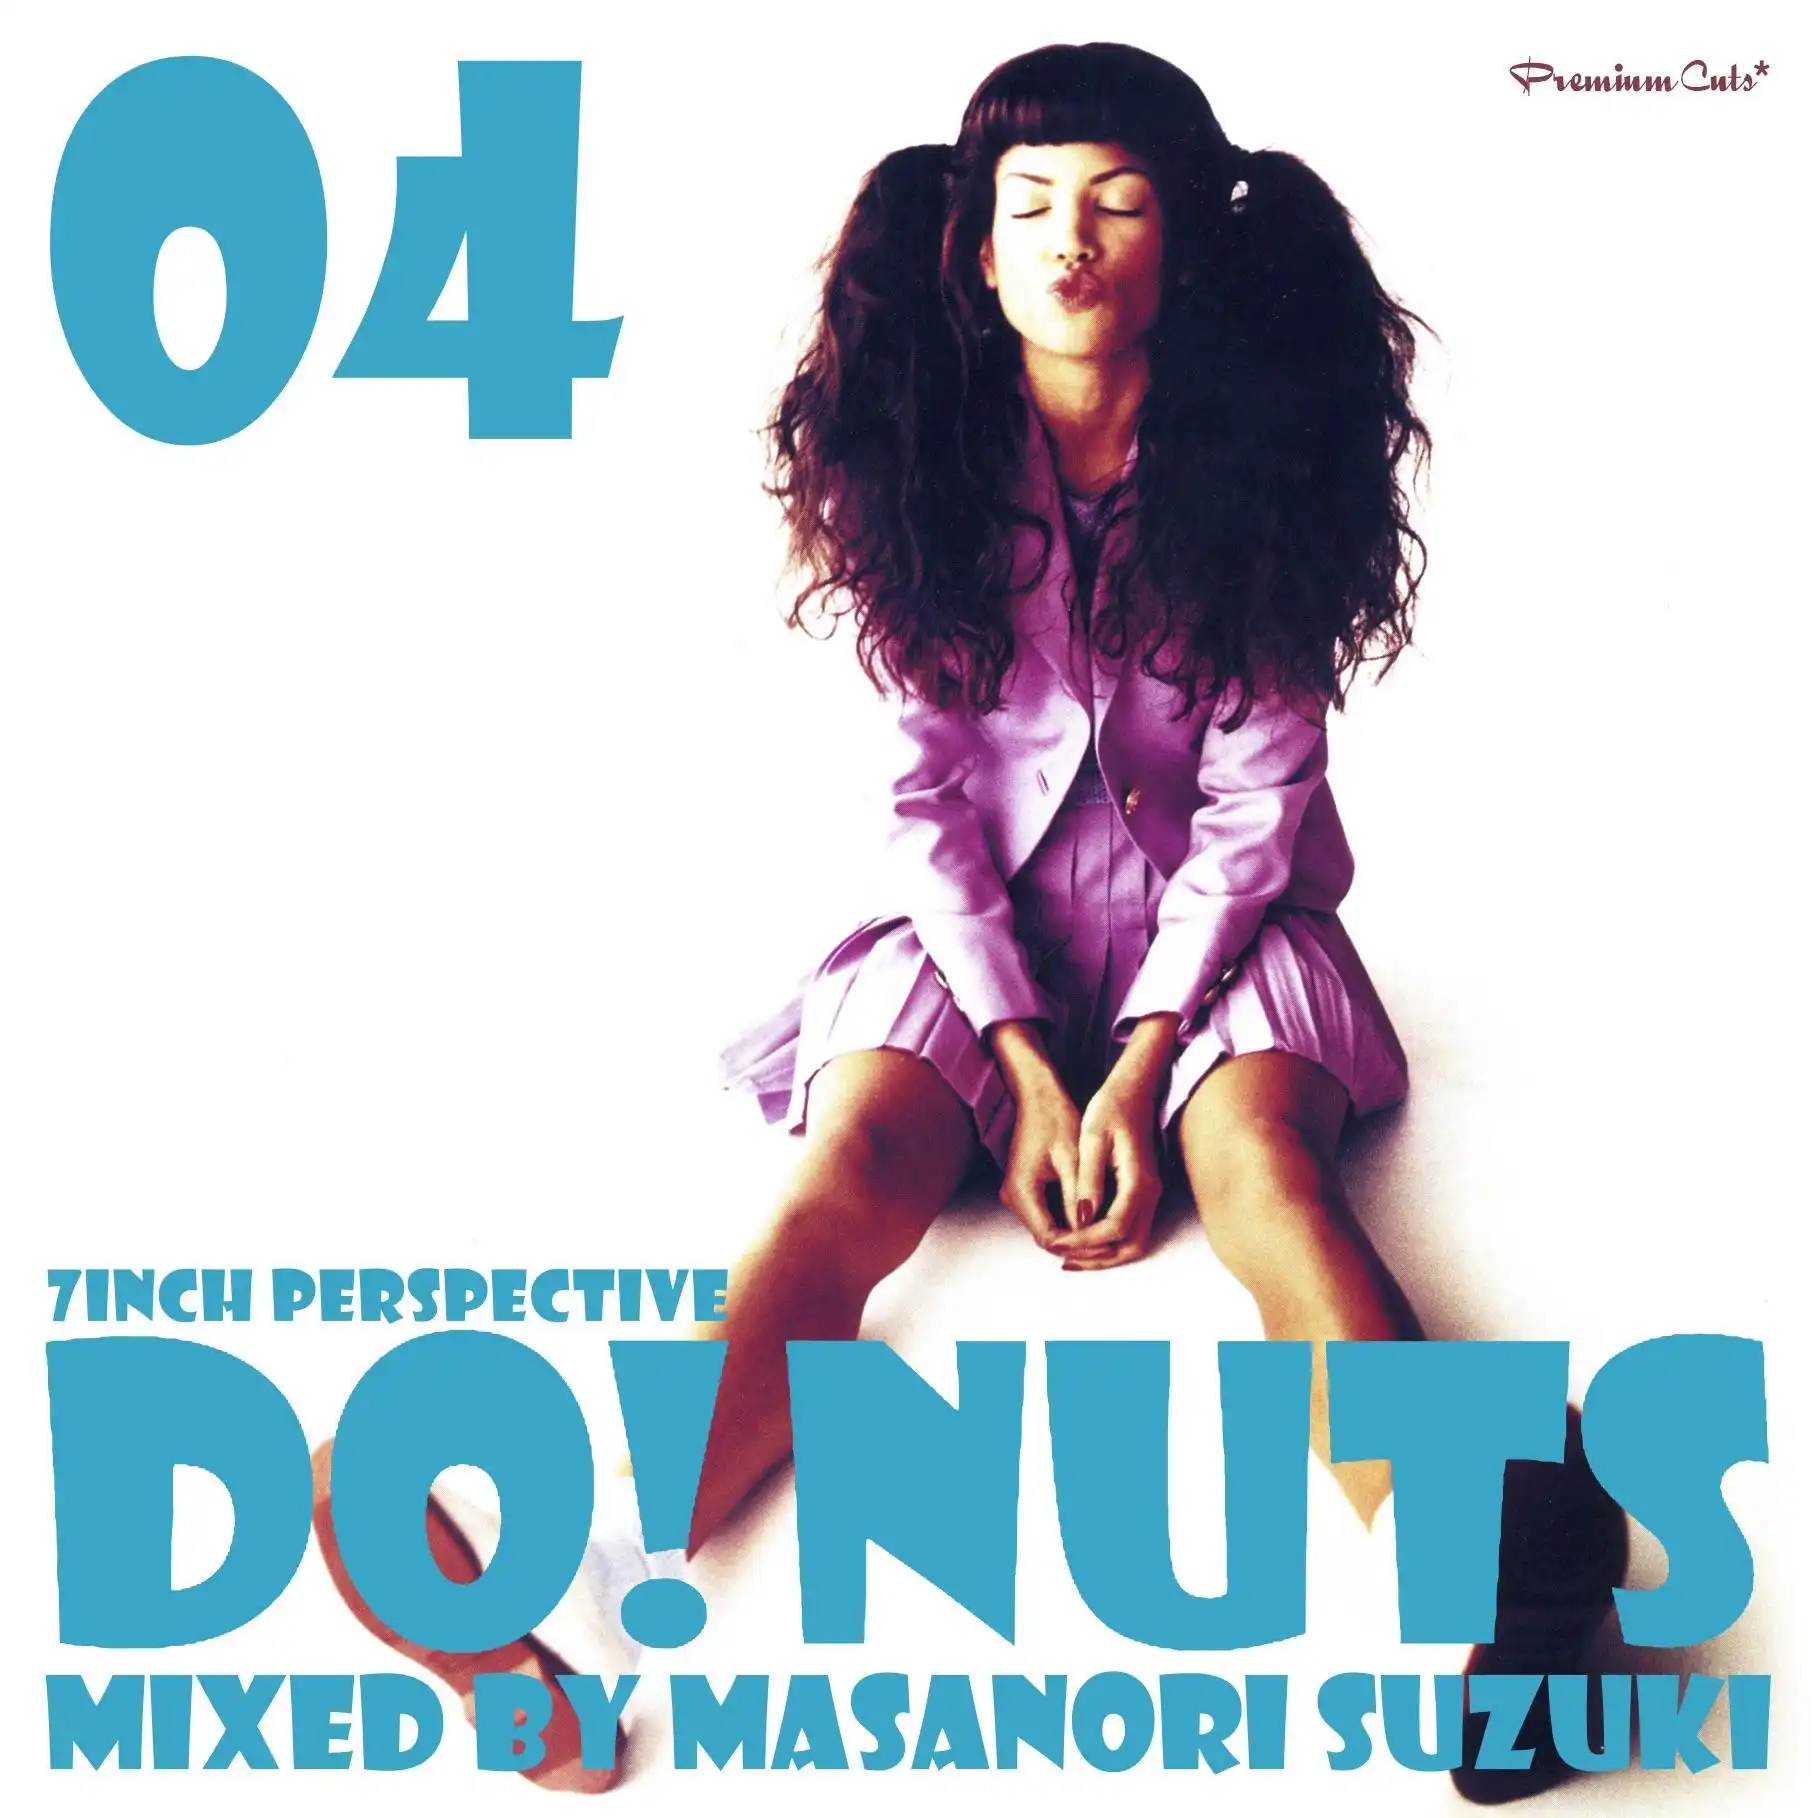 Masanori Suzuki / Premium Cuts* presents DO!NUTS04